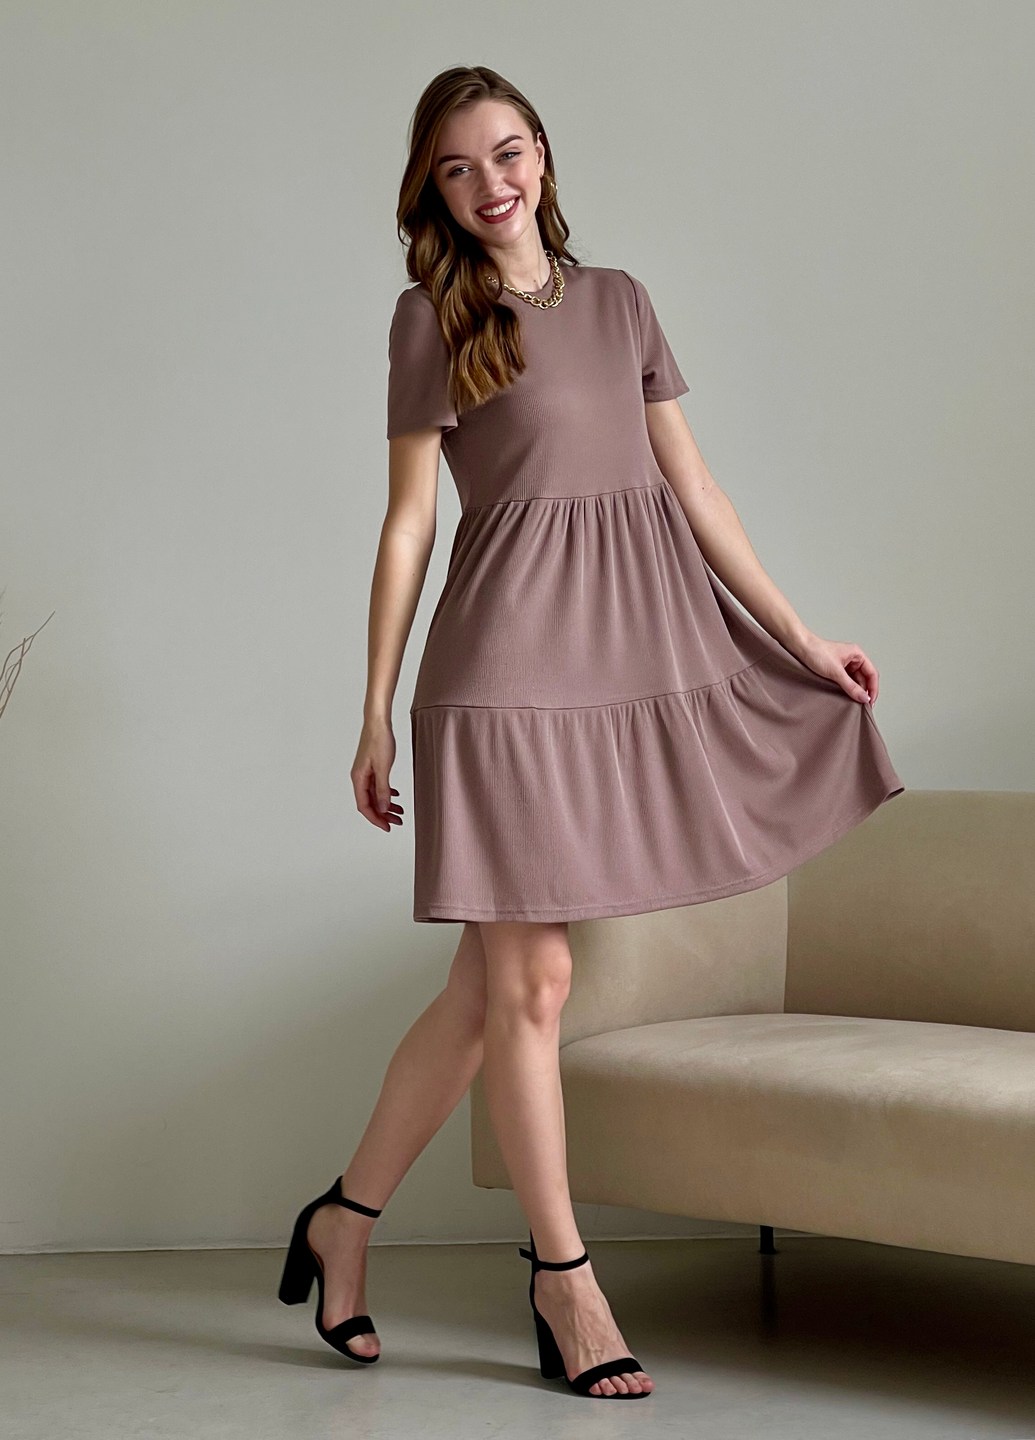 Купить Свободное платье трапеция миди цвет мокко Merlini Маркони 700001224 размер 42-44 (S-M) в интернет-магазине